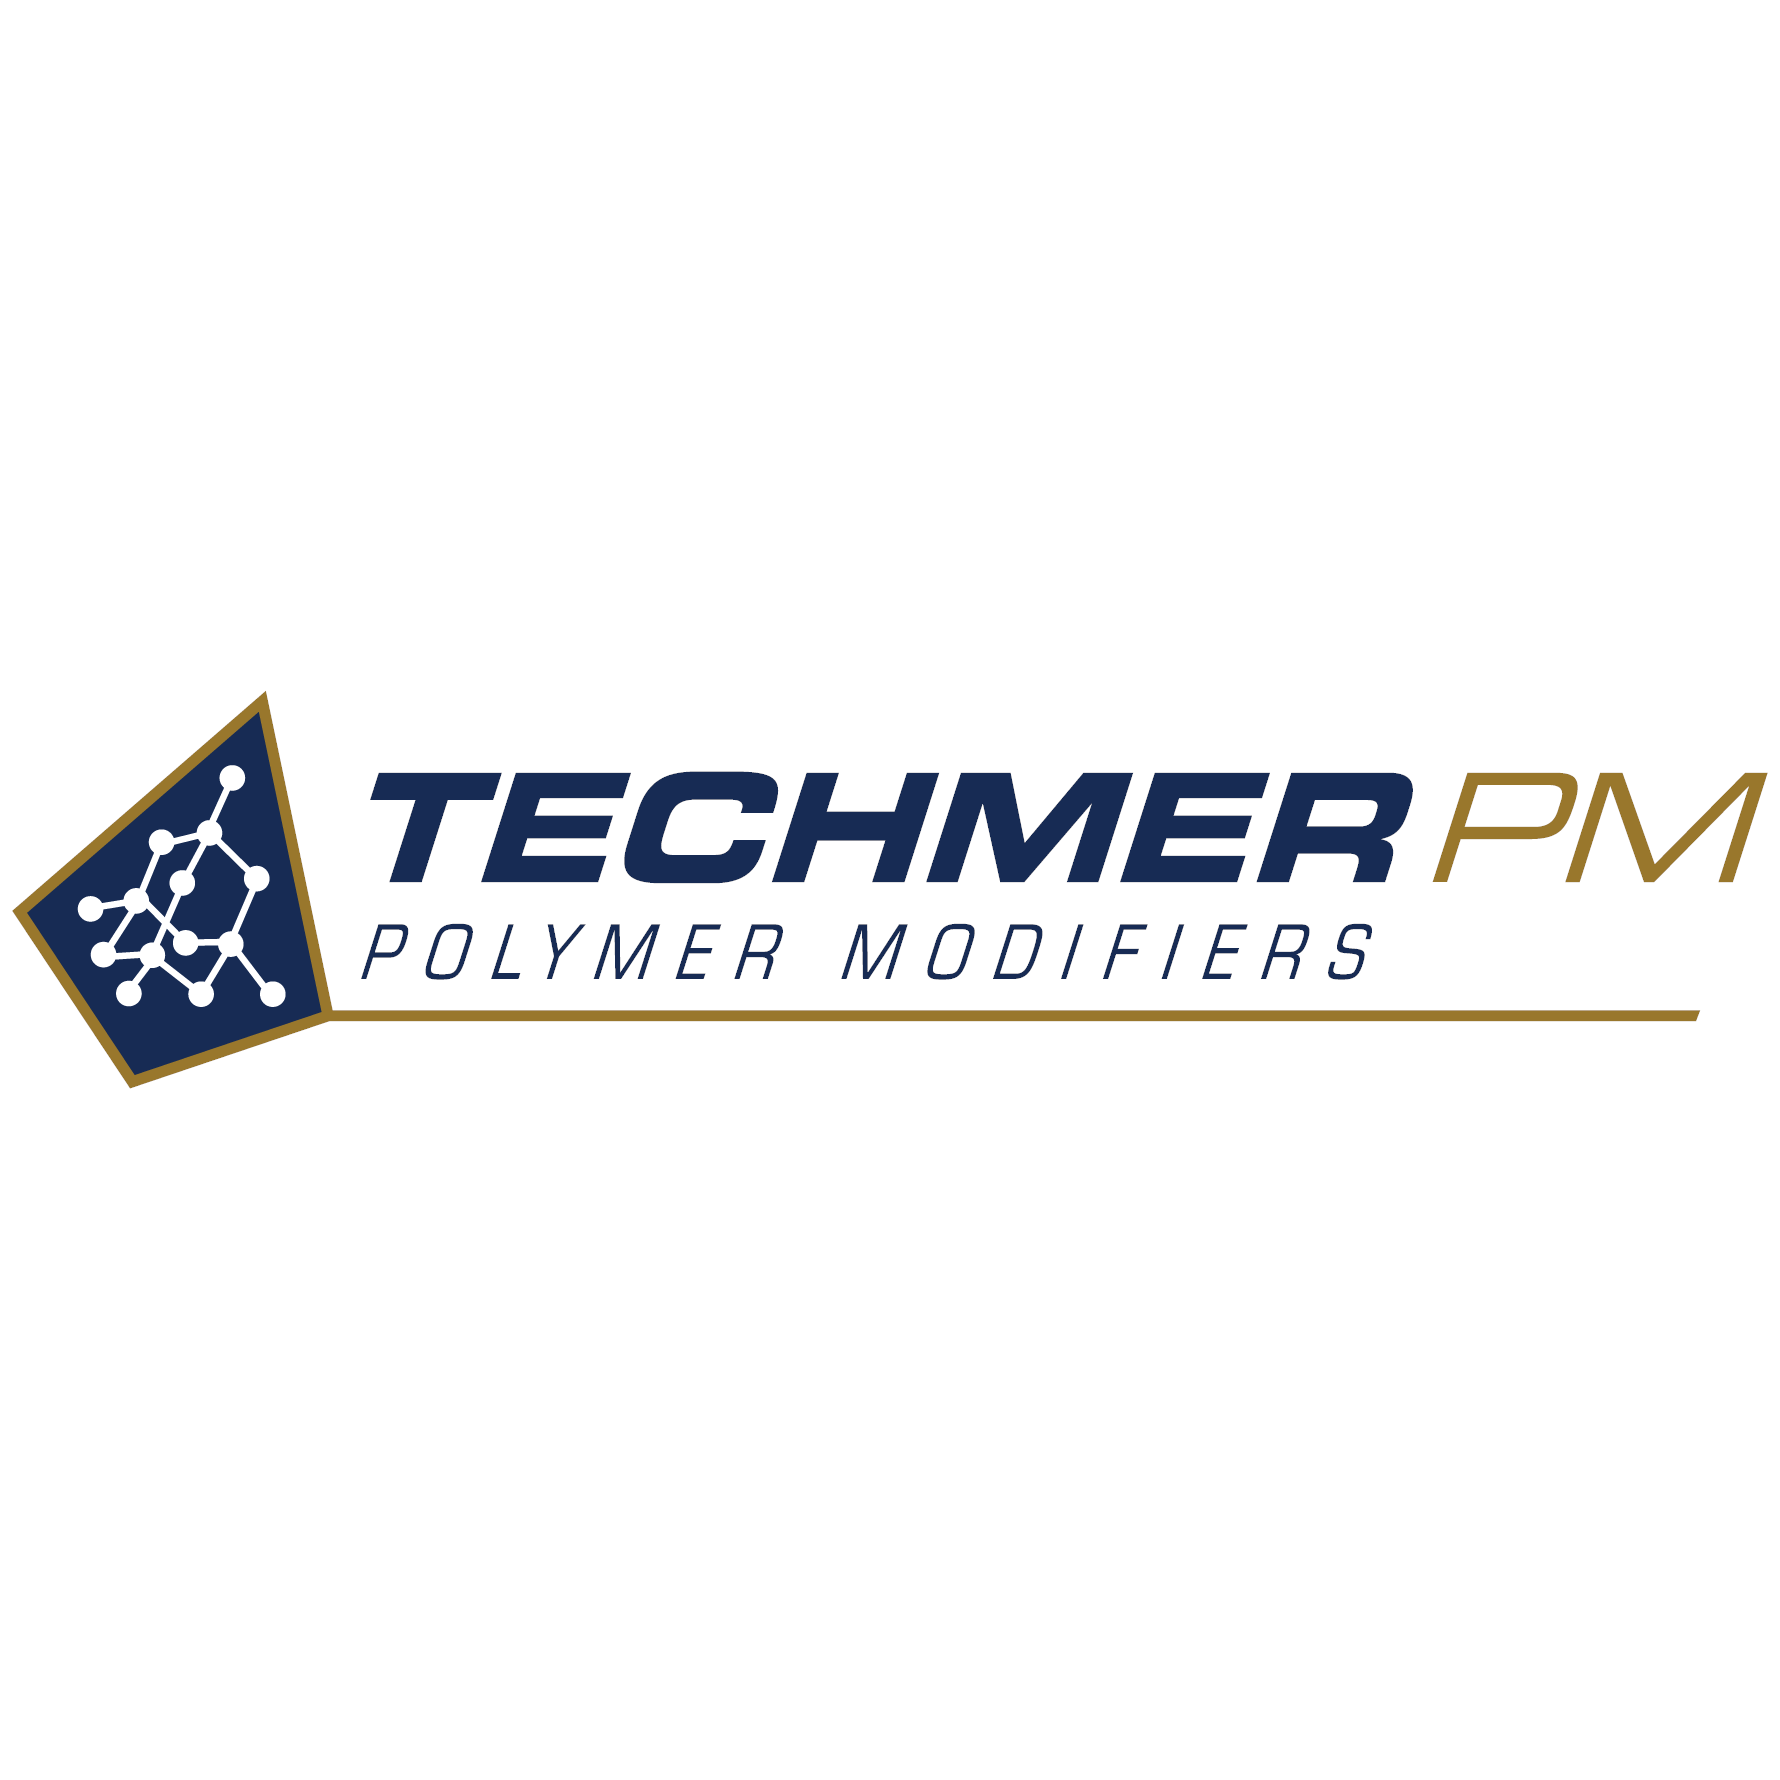 Techmer PM Logo_square